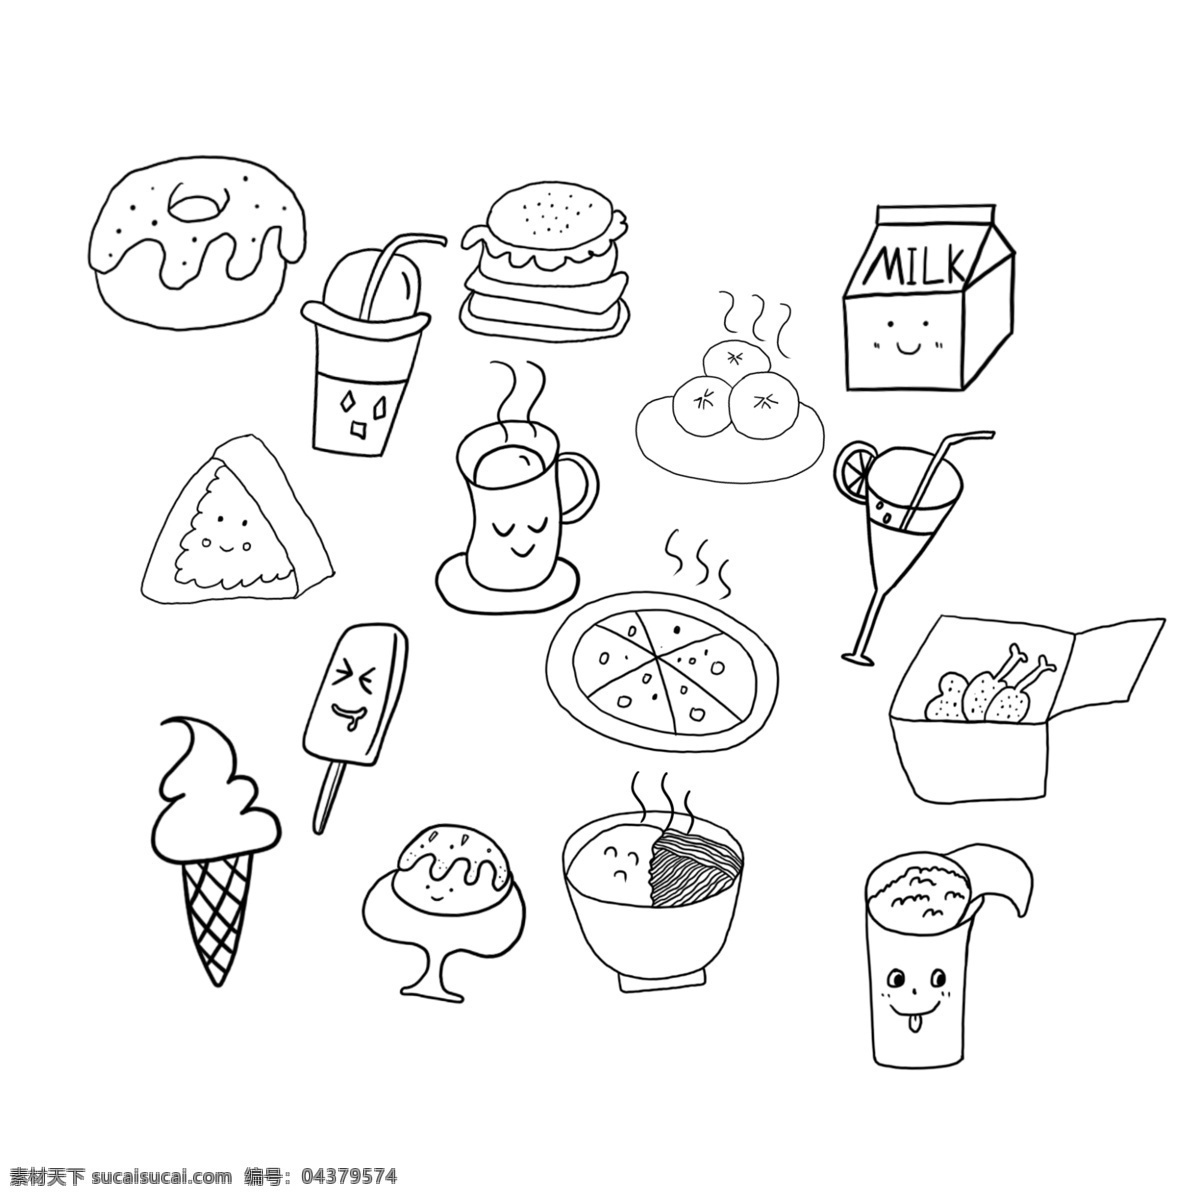 手绘 简 笔画 食品 食物 小 元素 简笔画 食物元素